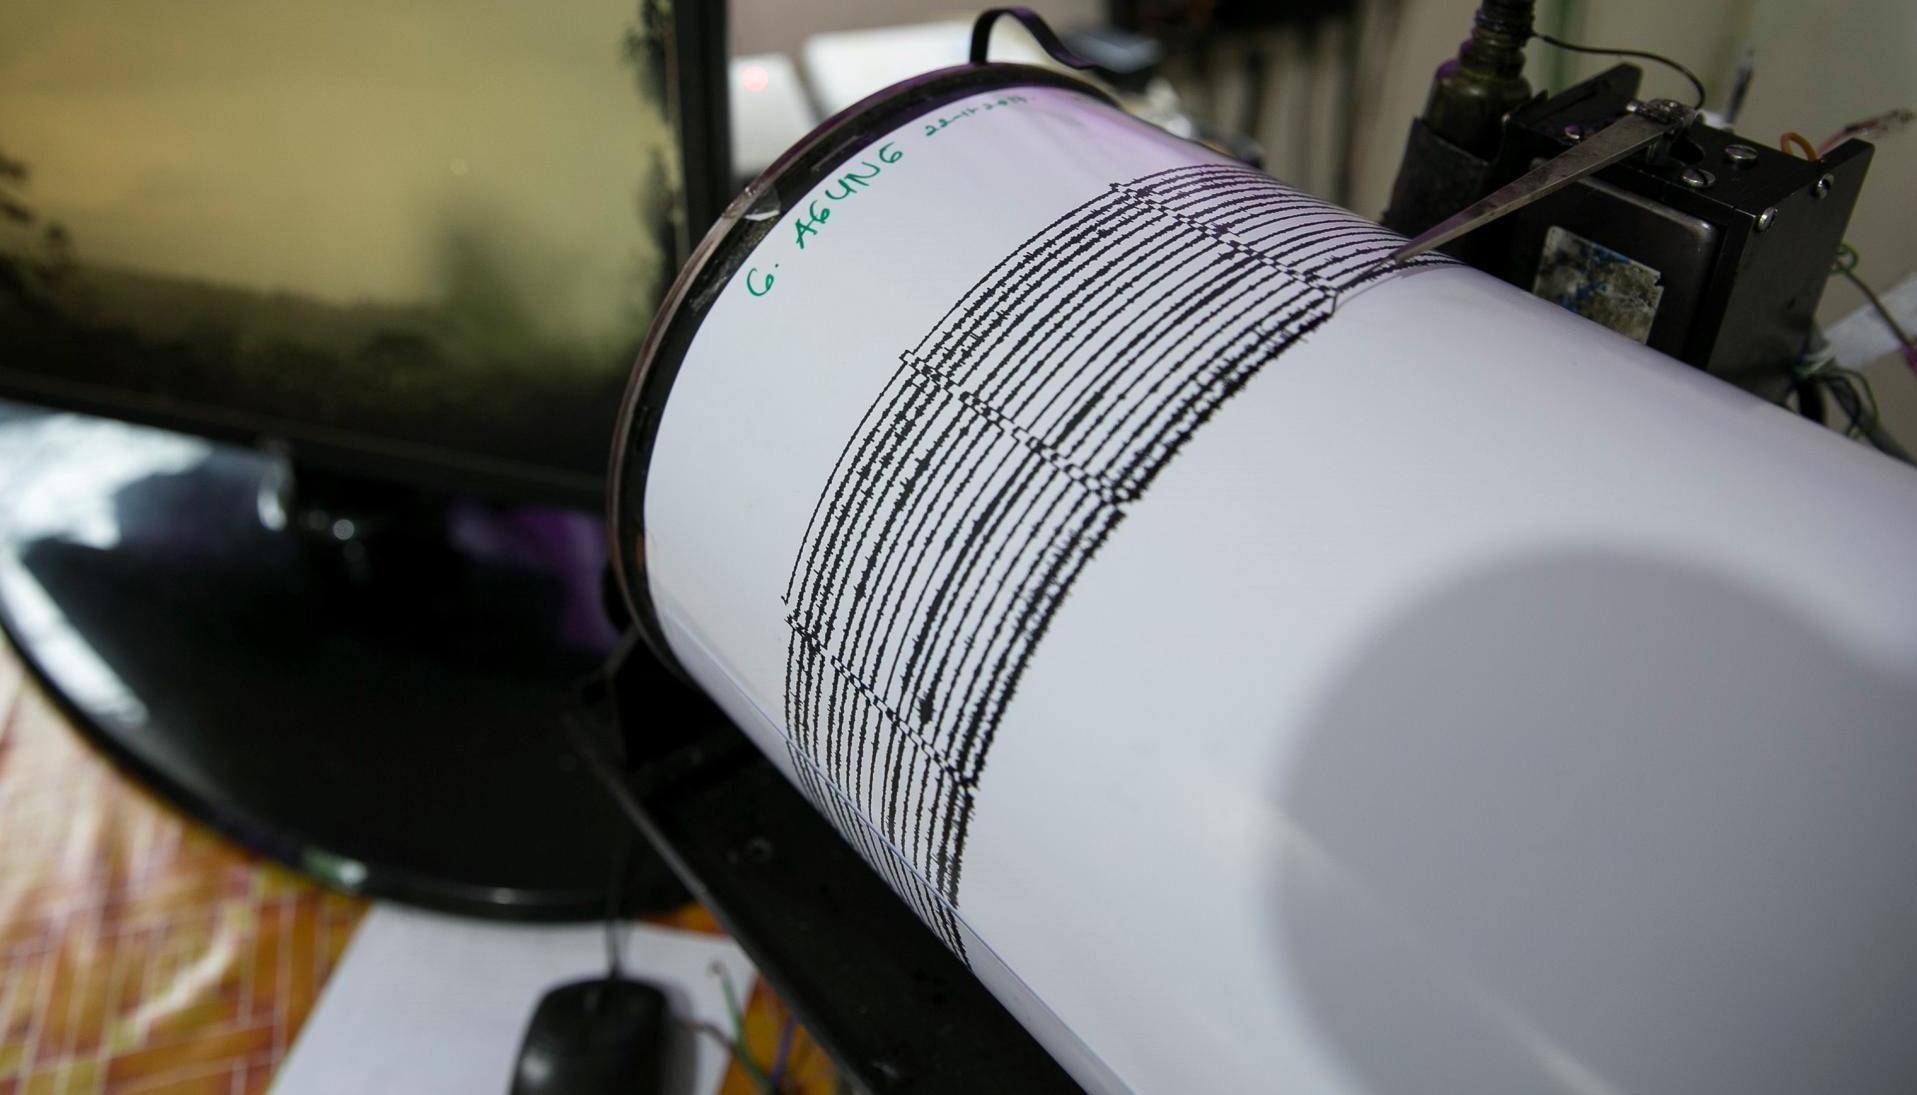 Un sismógrafo muestra actividad sísmica.